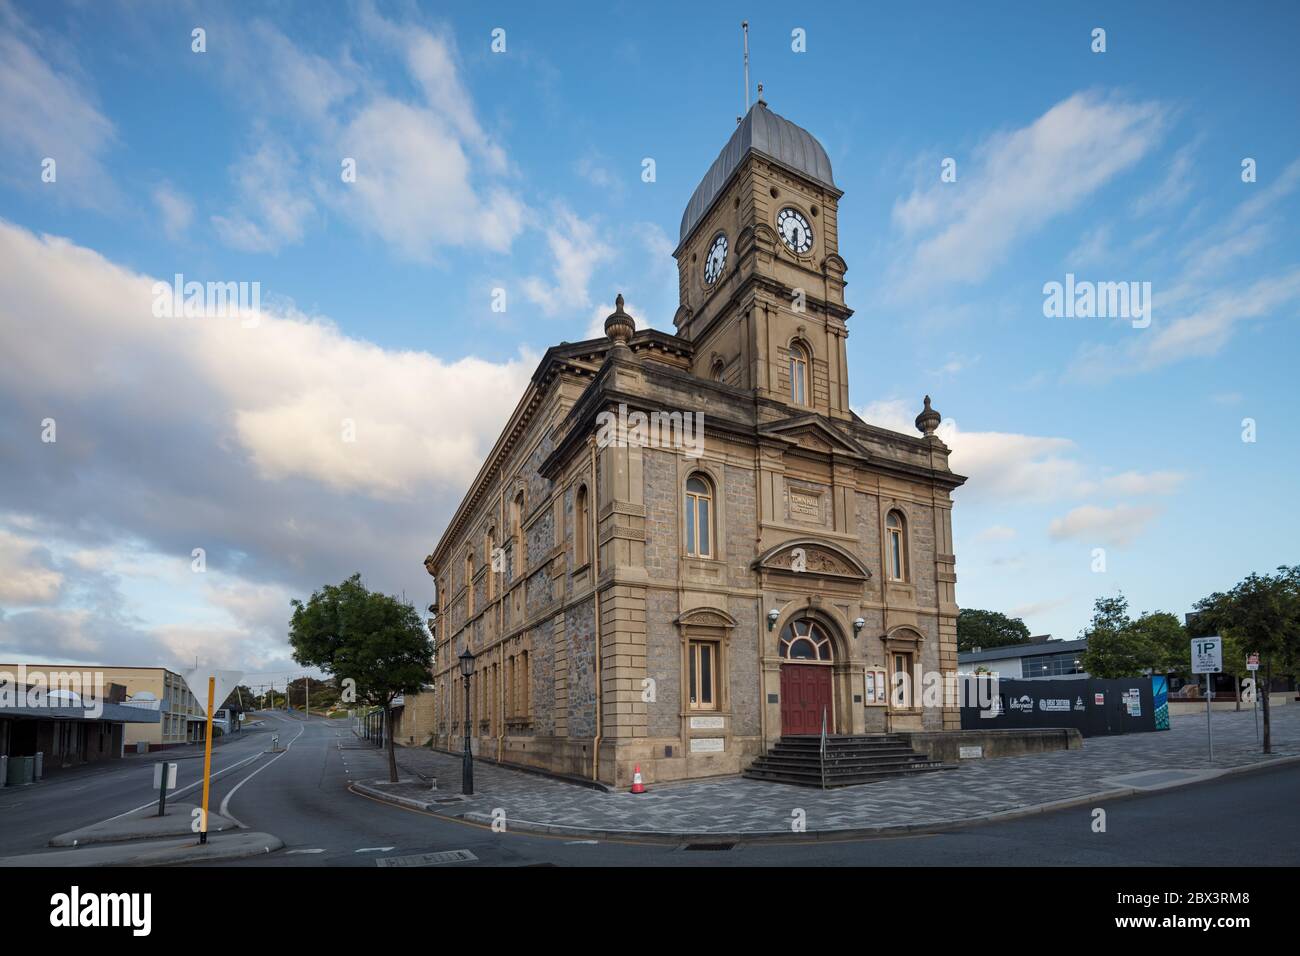 Albany Western Australia November 11th 2019 : Early morning view of Albany town Hall, Albany, Western Australia Stock Photo